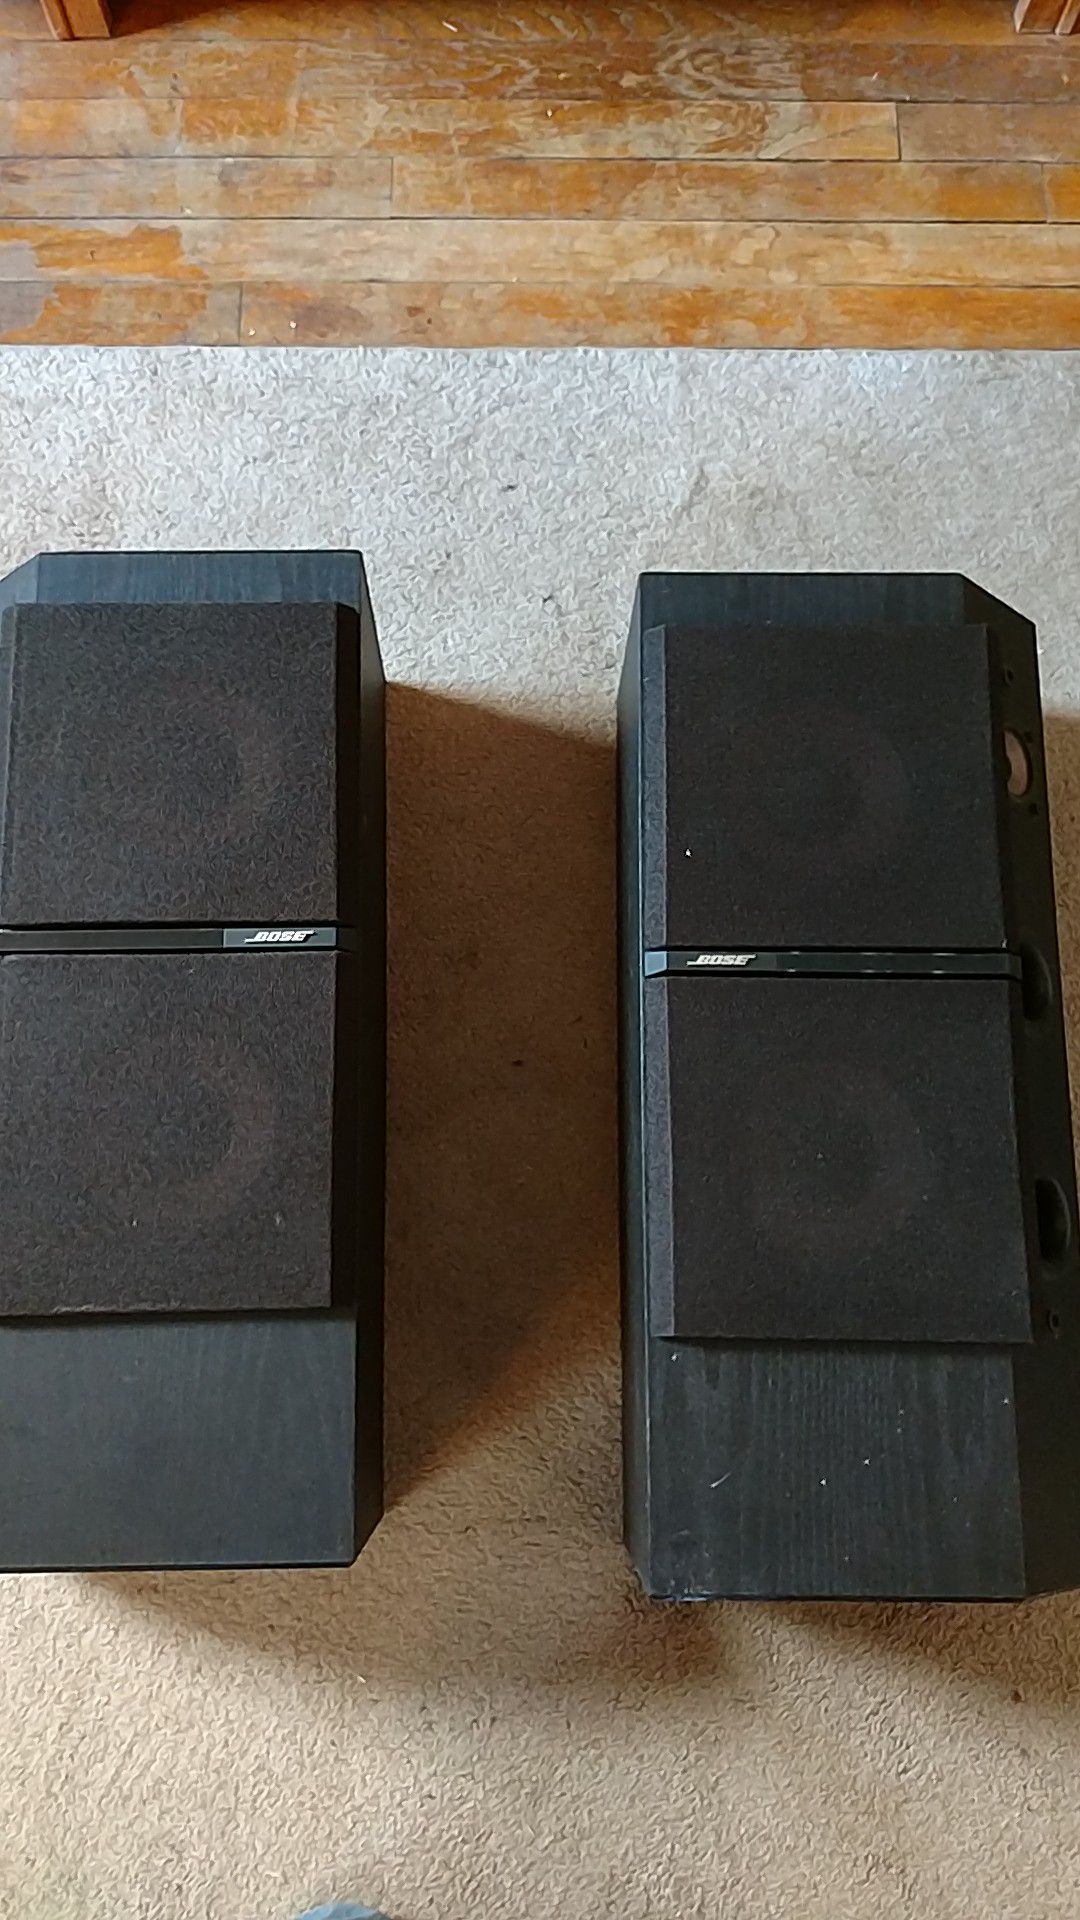 Bose speakers 4001